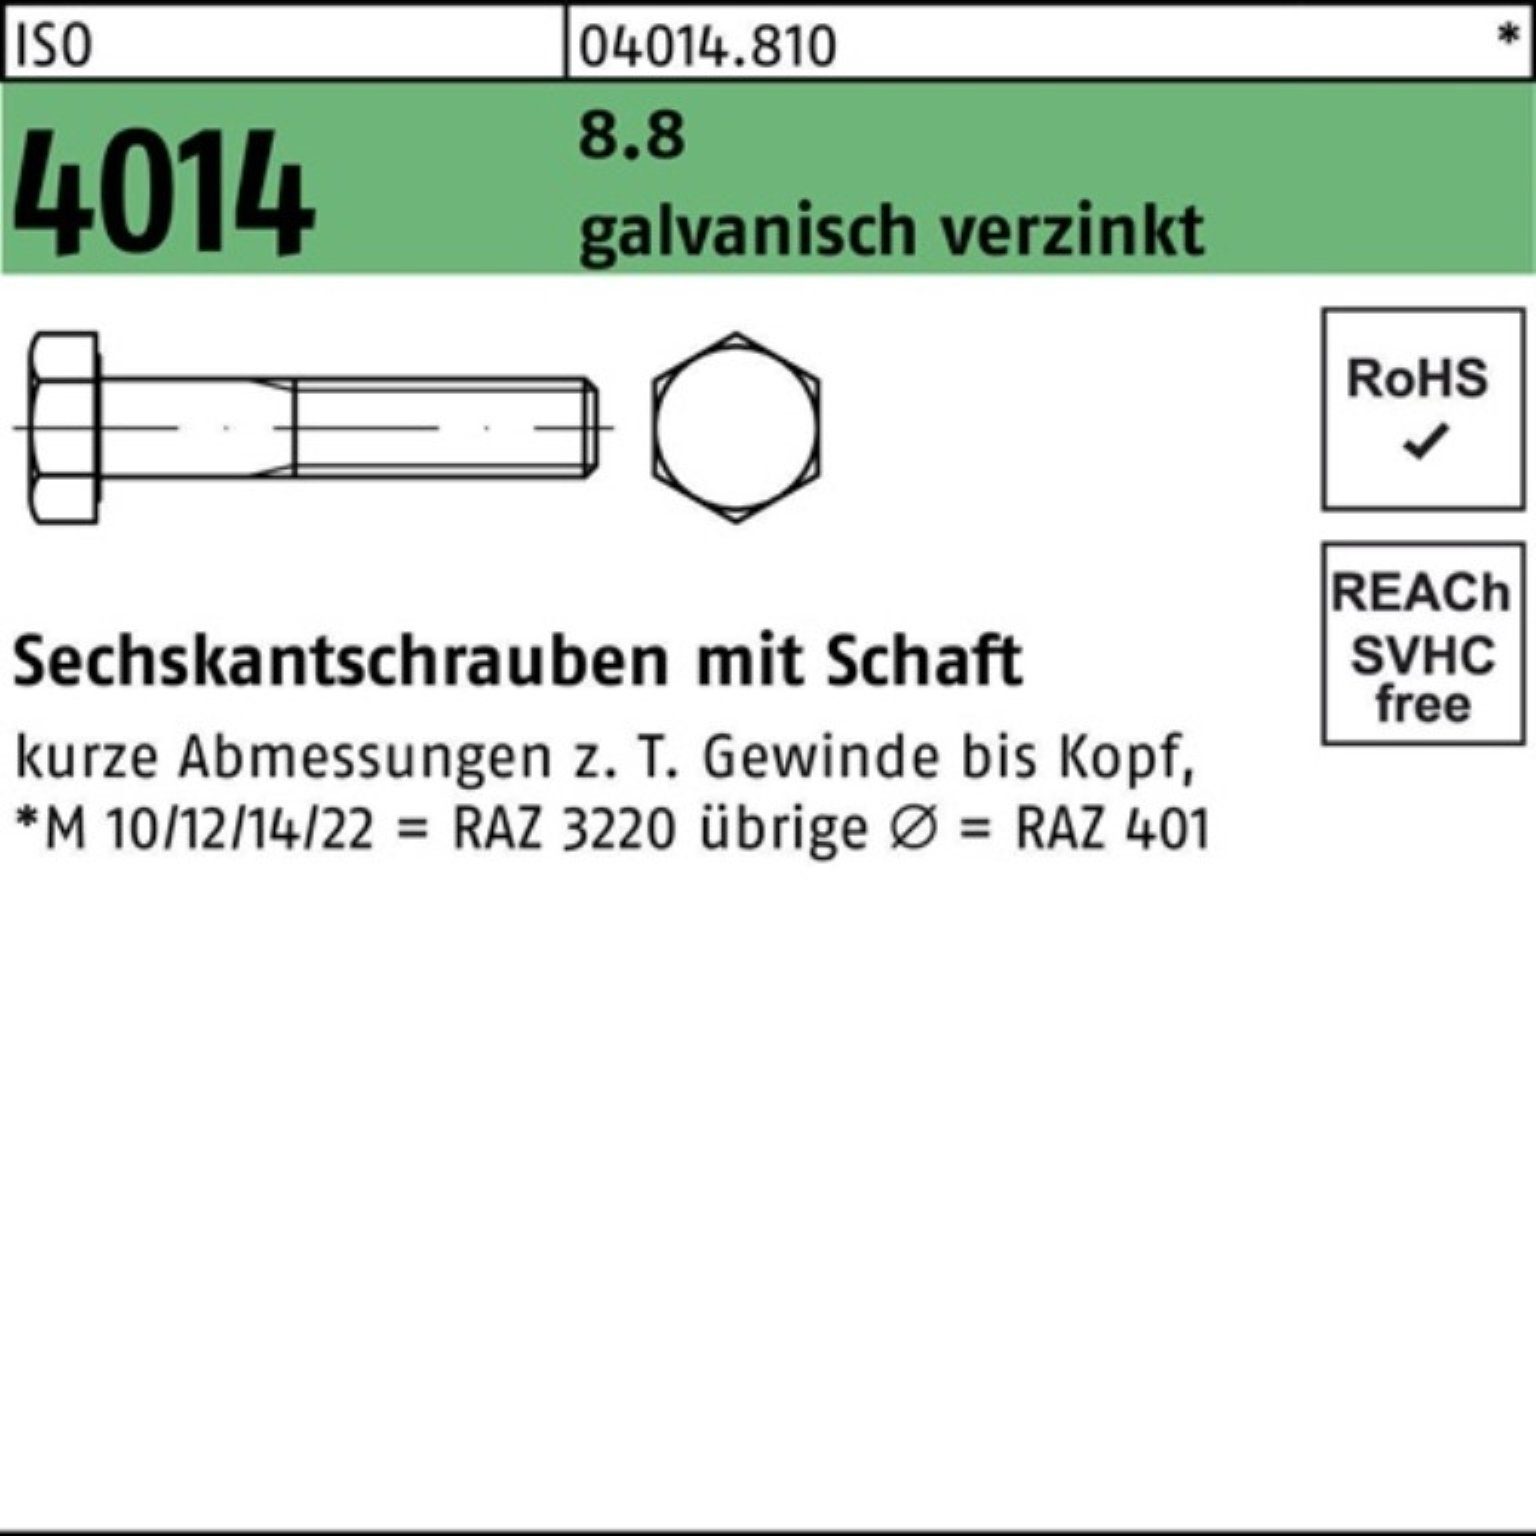 Bufab Sechskantschraube 100er Pack Sechskantschraube 8.8 1 110 M36x 4014 ISO galv.verz. Schaft